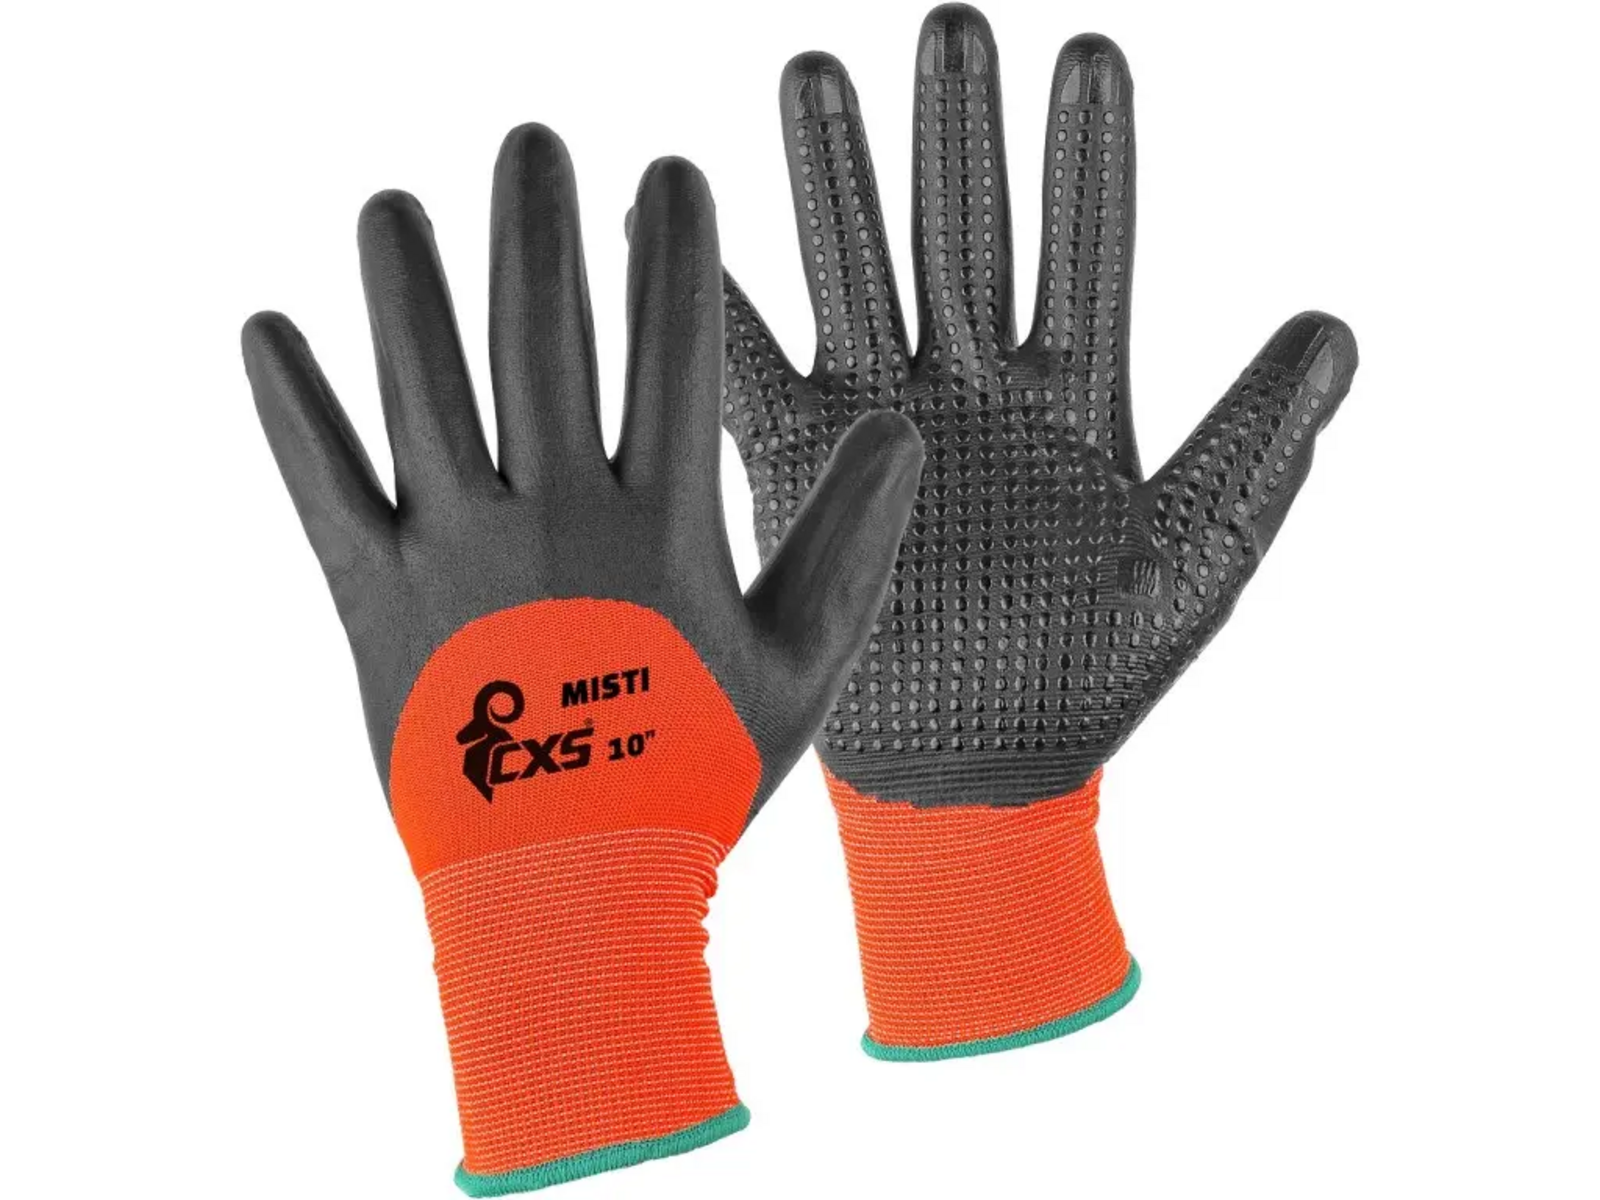 Povrstvené rukavice CXS Misti - veľkosť: 9/L, farba: oranžová/sivá